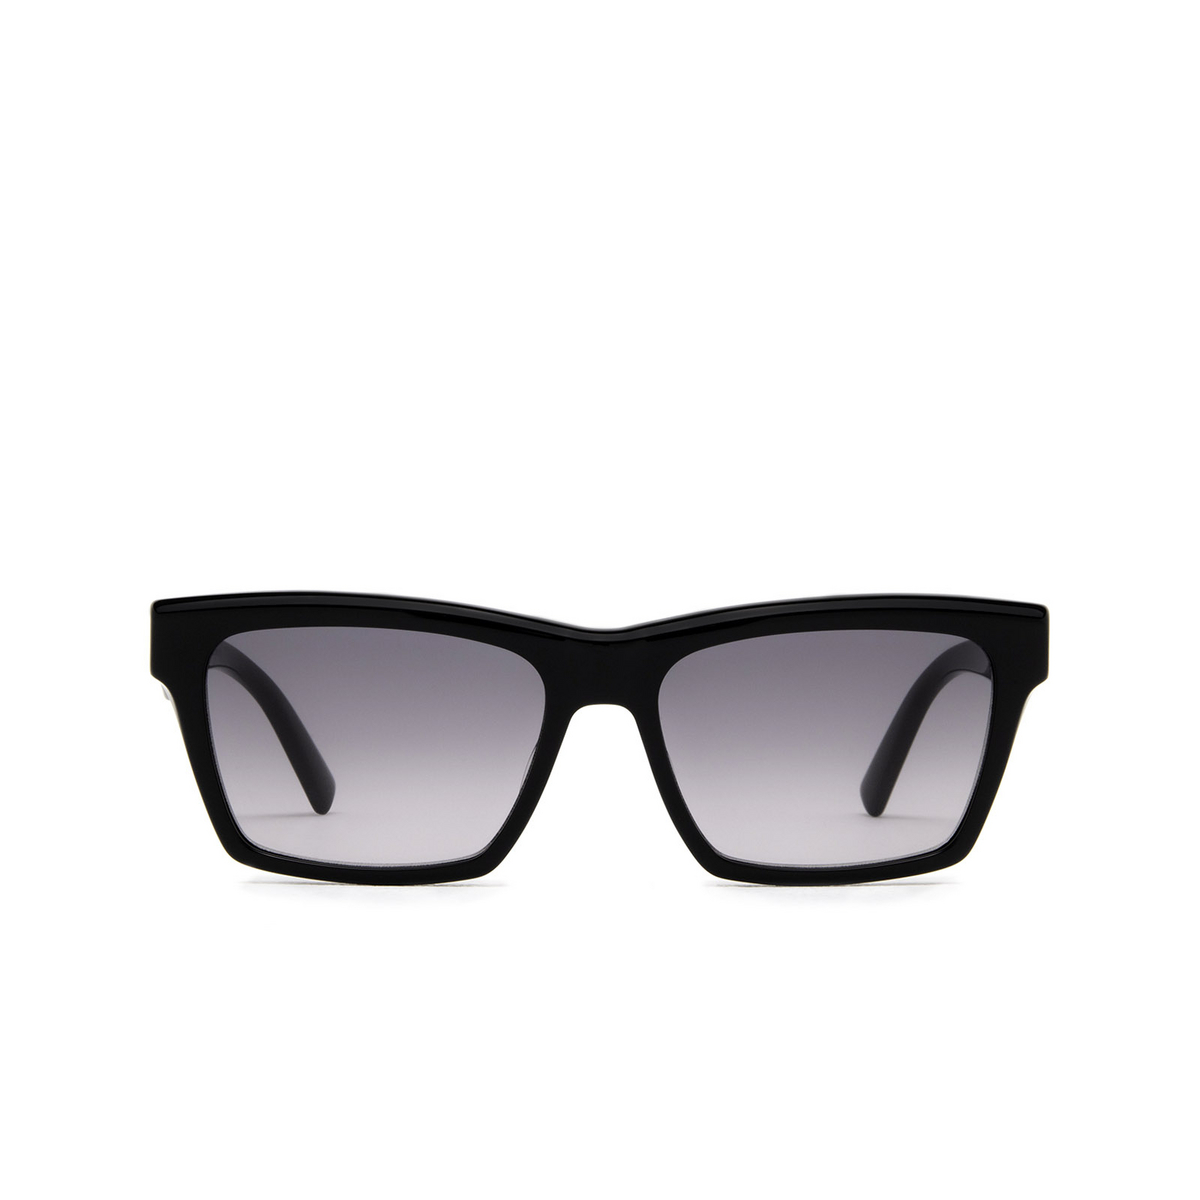 Saint Laurent® Rectangle Sunglasses: SL M104 color Black 001 - front view.